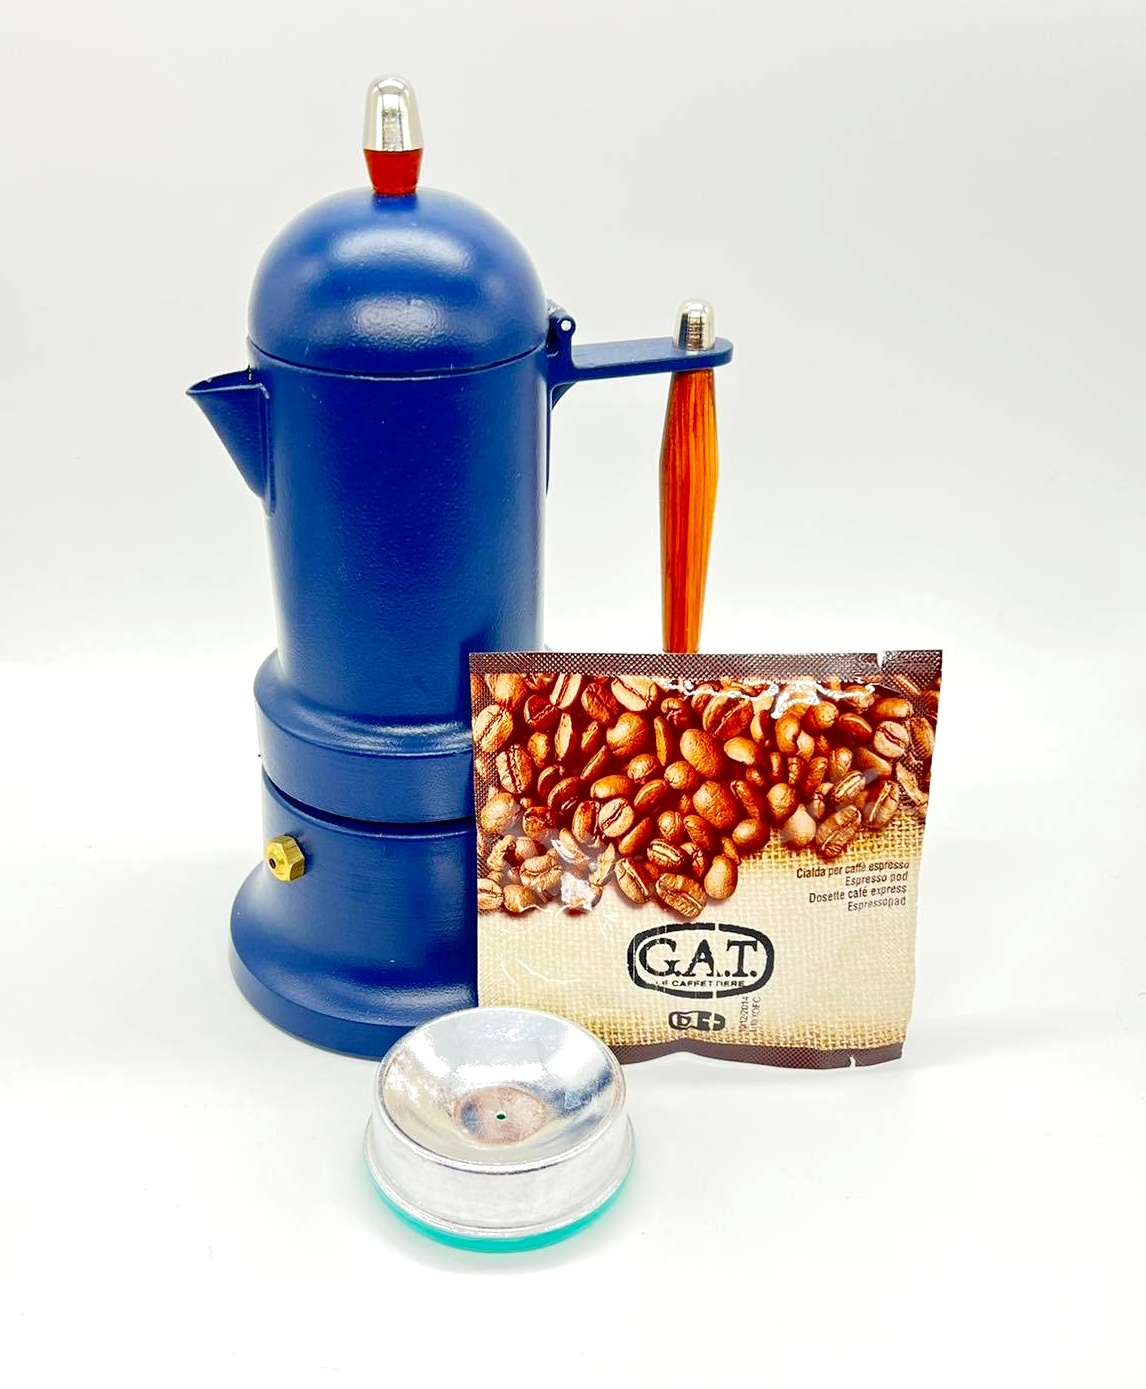 GAT MINNI PLUS Coffee Maker - Blue